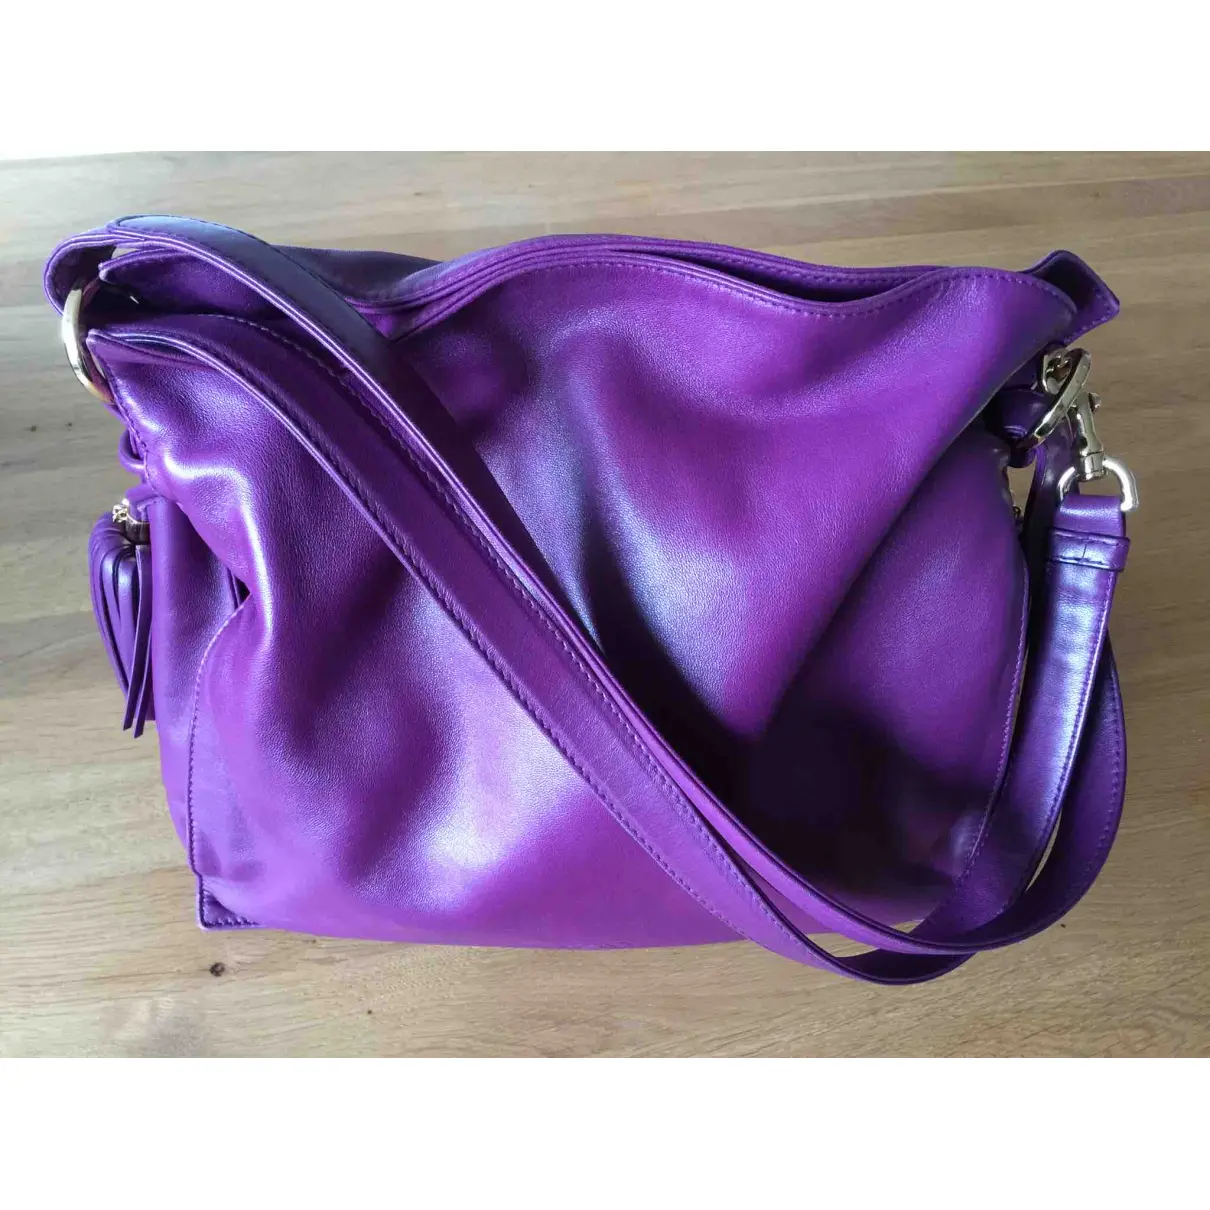 Buy Loewe Flamenco leather handbag online - Vintage